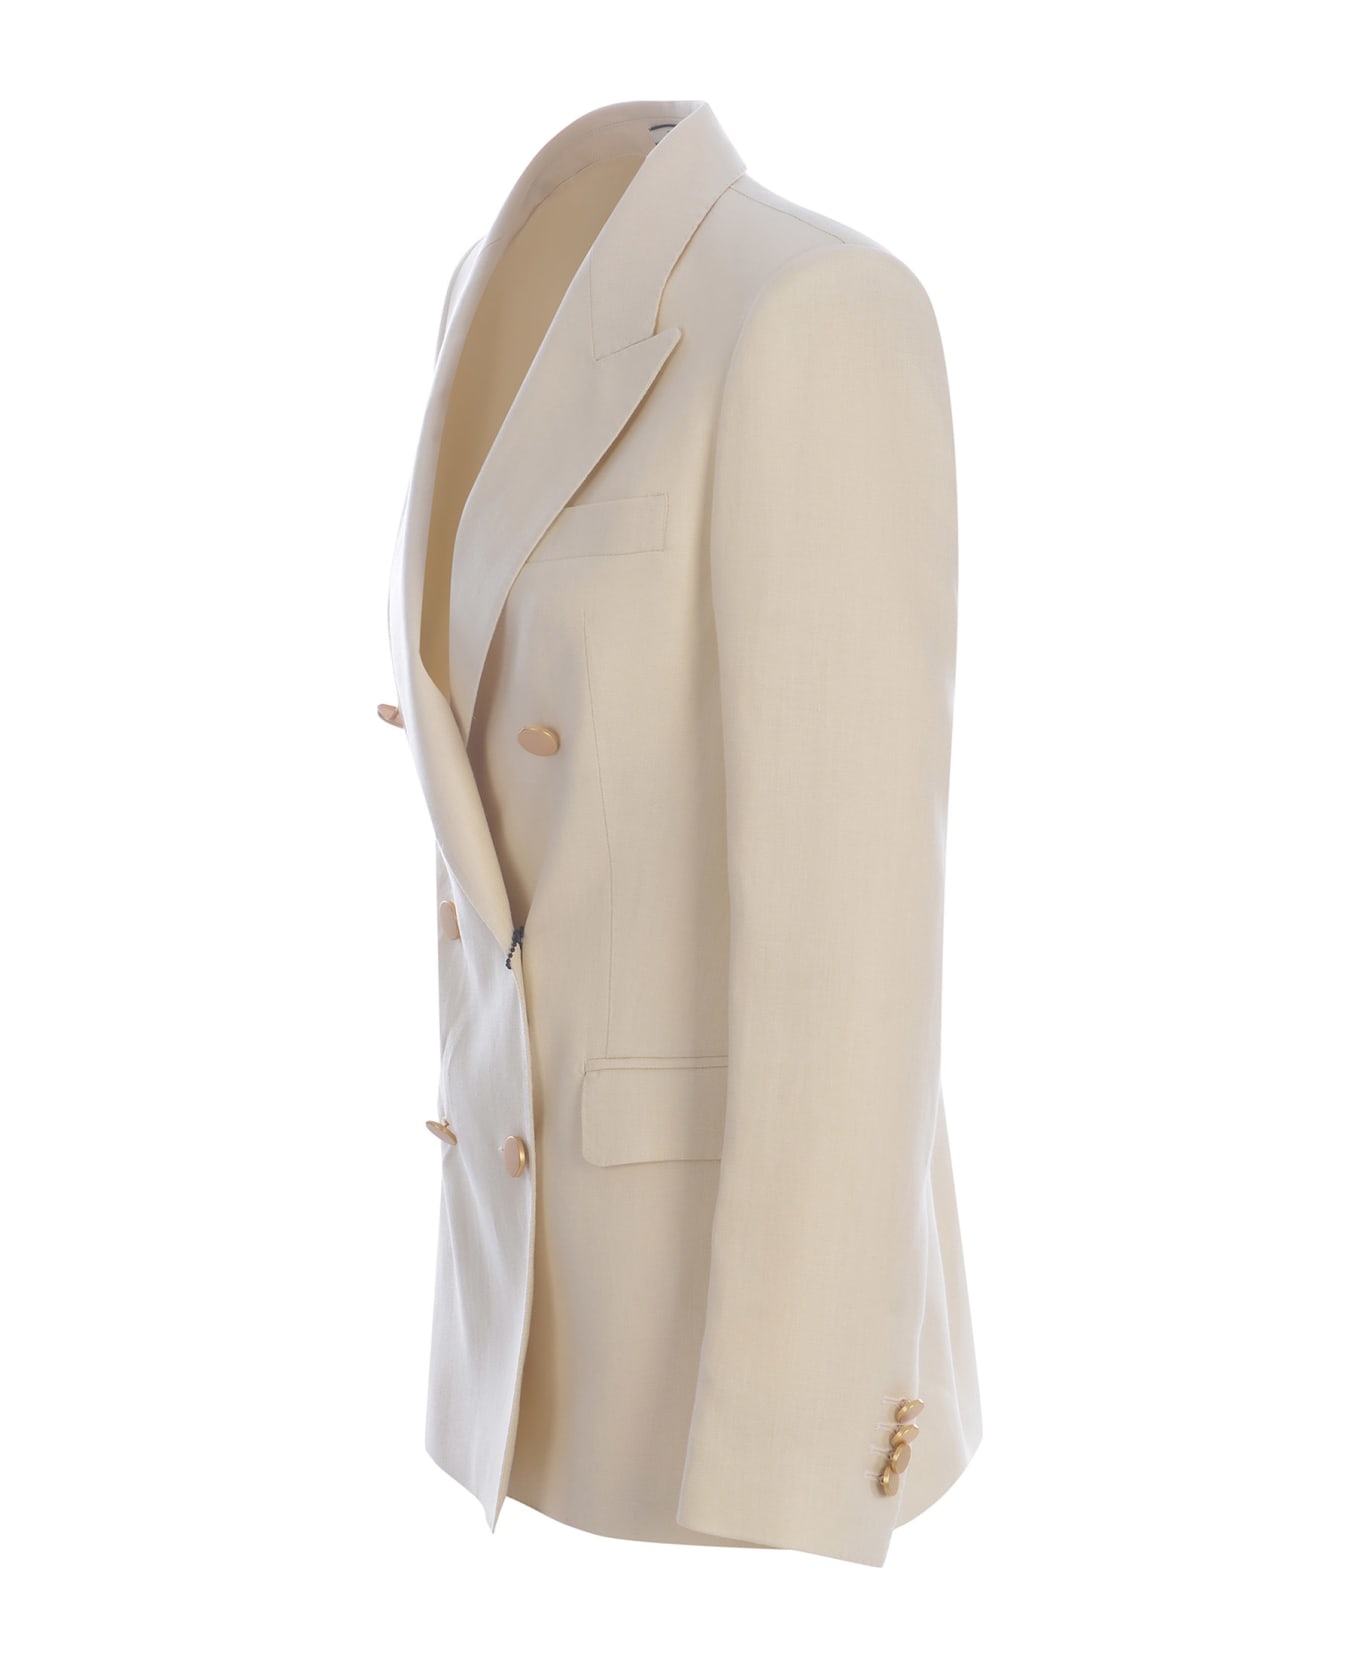 Tagliatore Double-breasted Jacket Tagliatore "j-parigi" Made Of Linen - Avorio